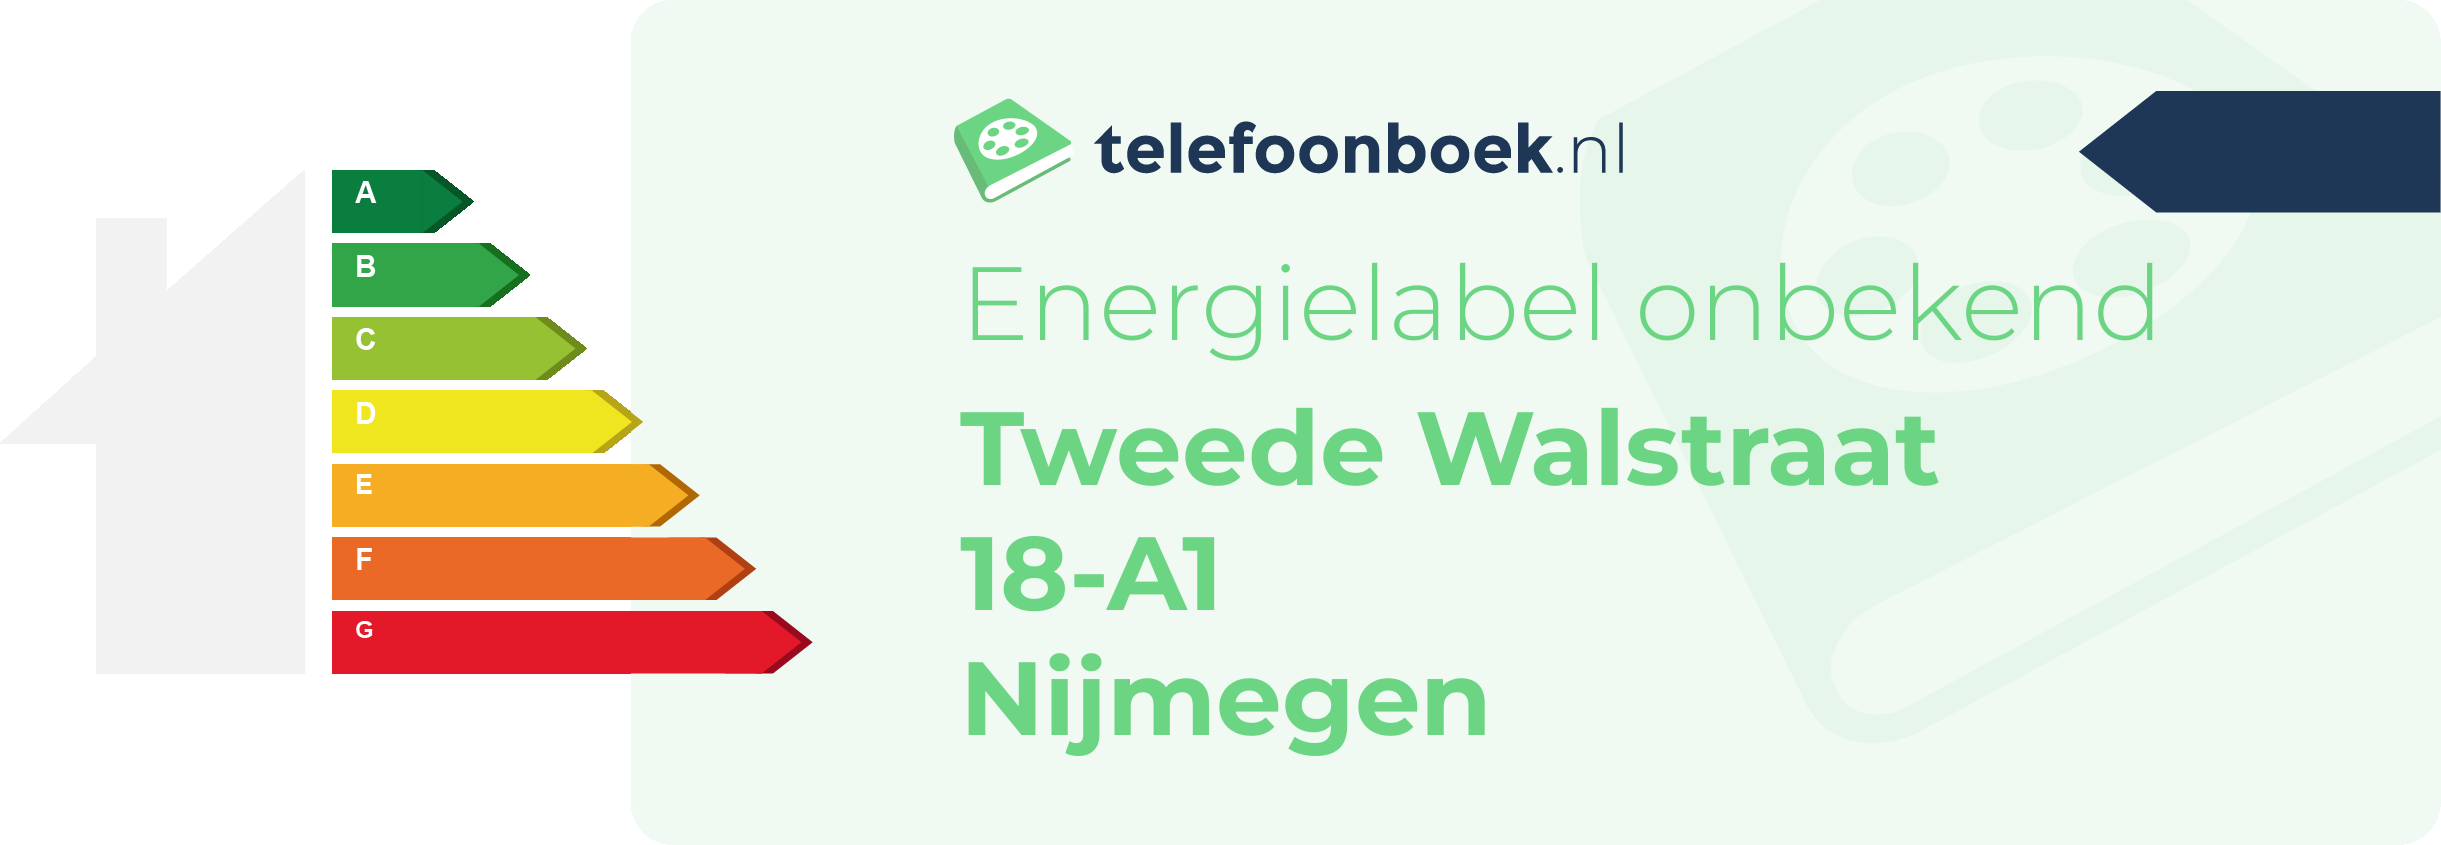 Energielabel Tweede Walstraat 18-A1 Nijmegen